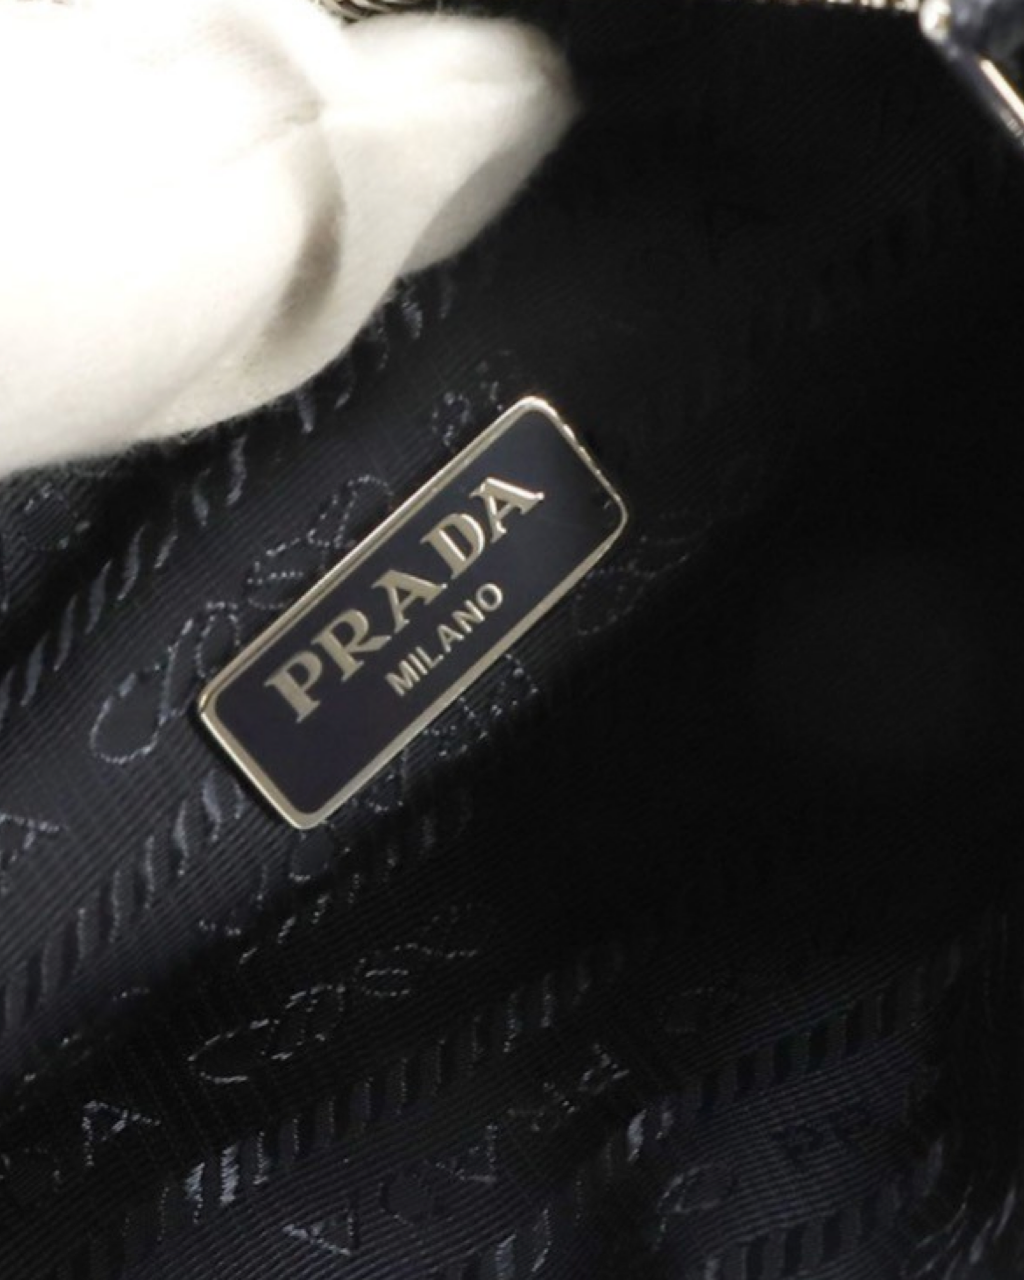 Prada Re-edition 2005 bag